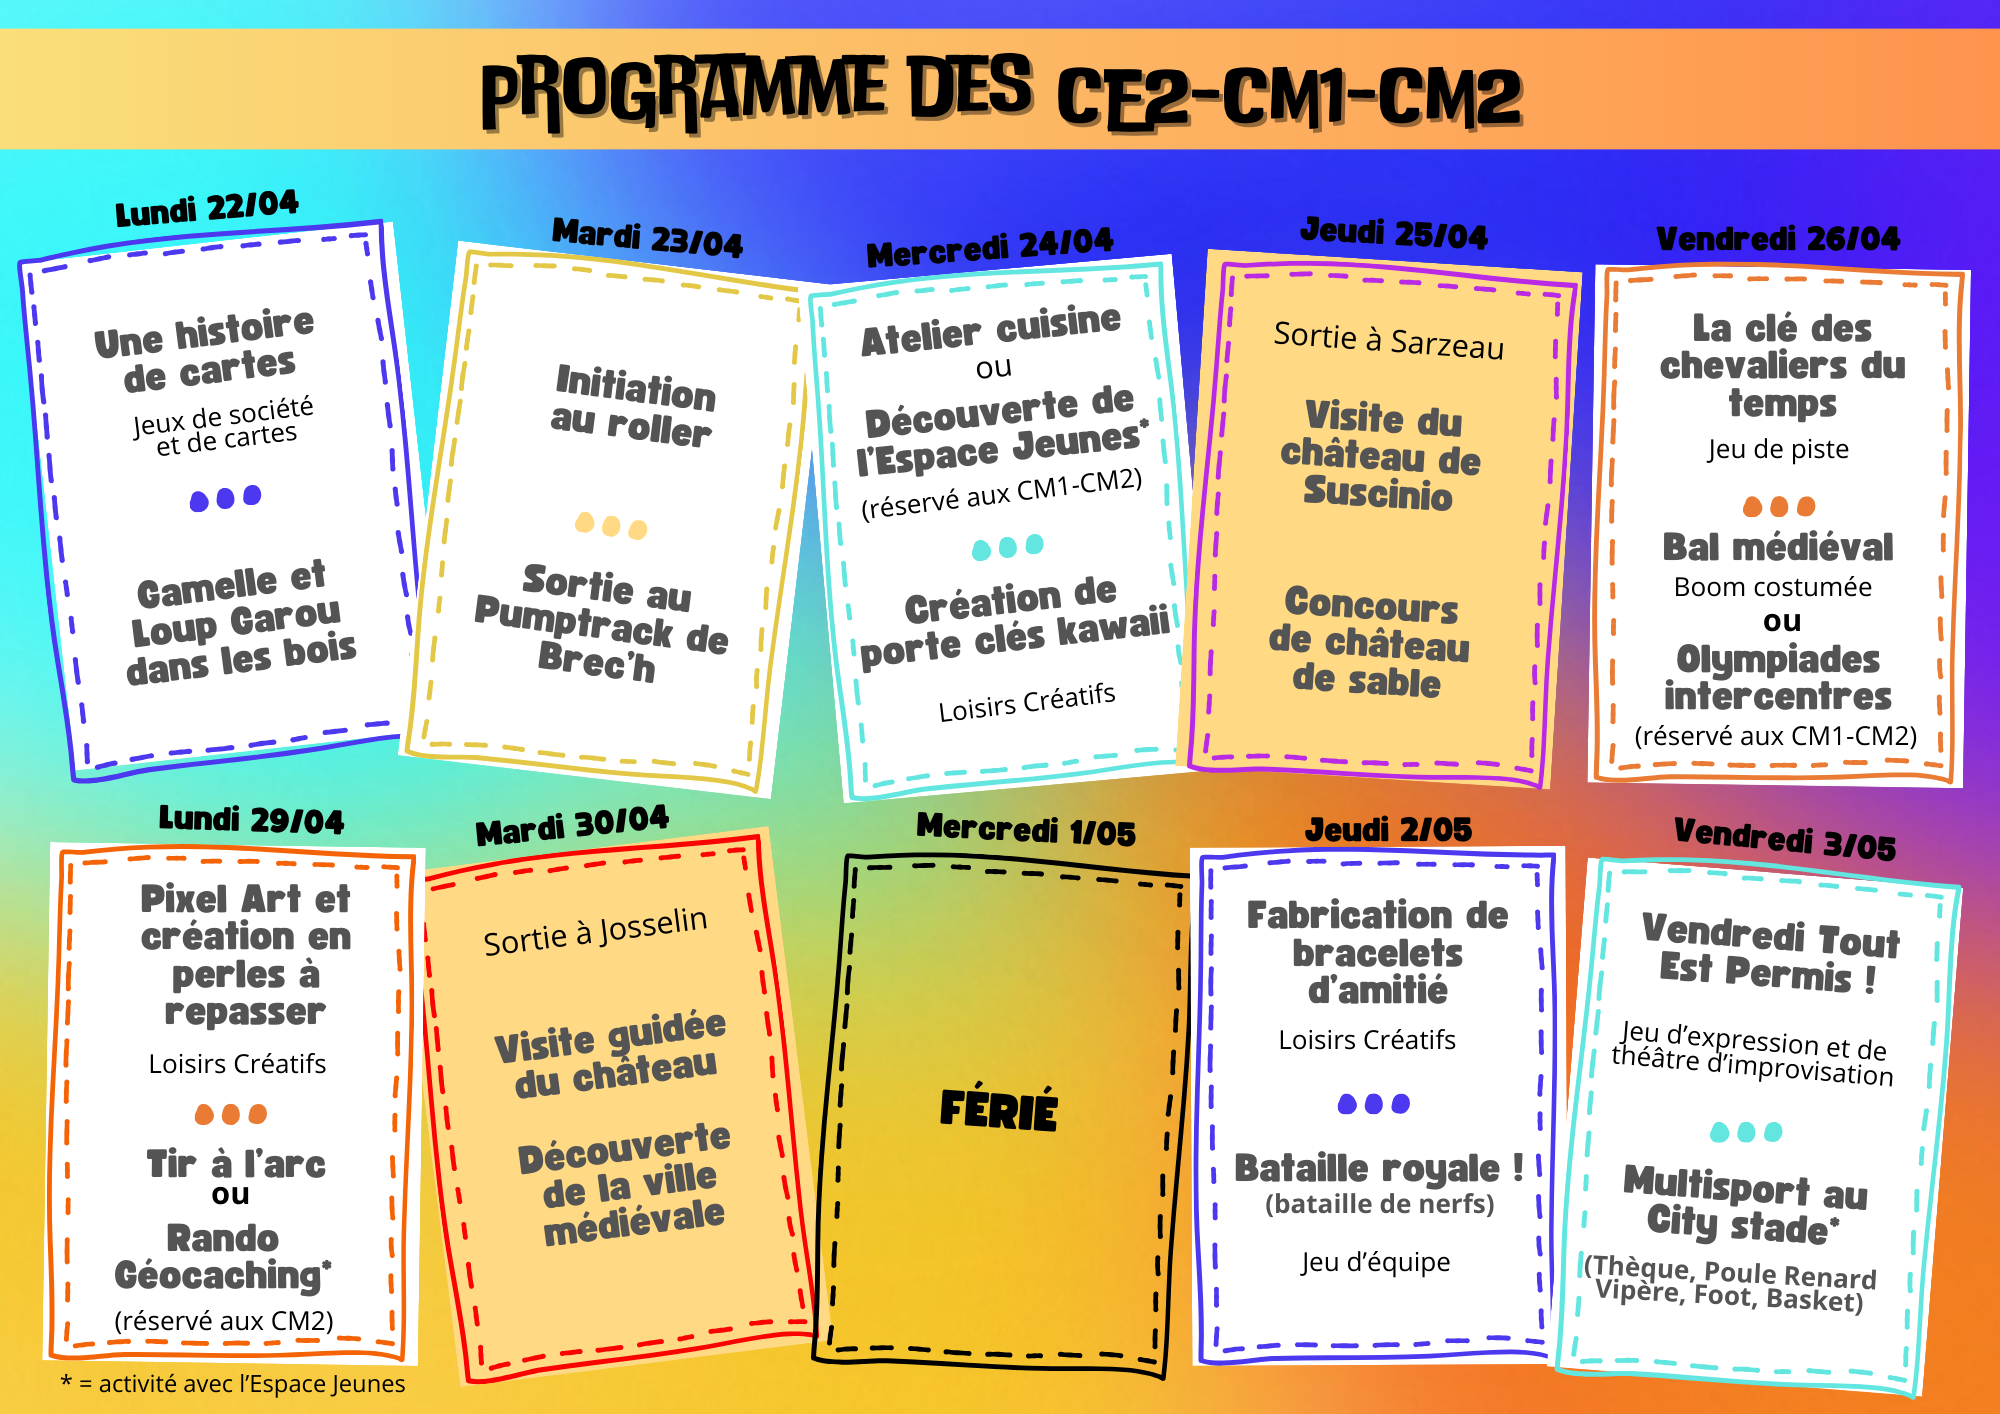 Programme des CE2-CM1-CM2.png